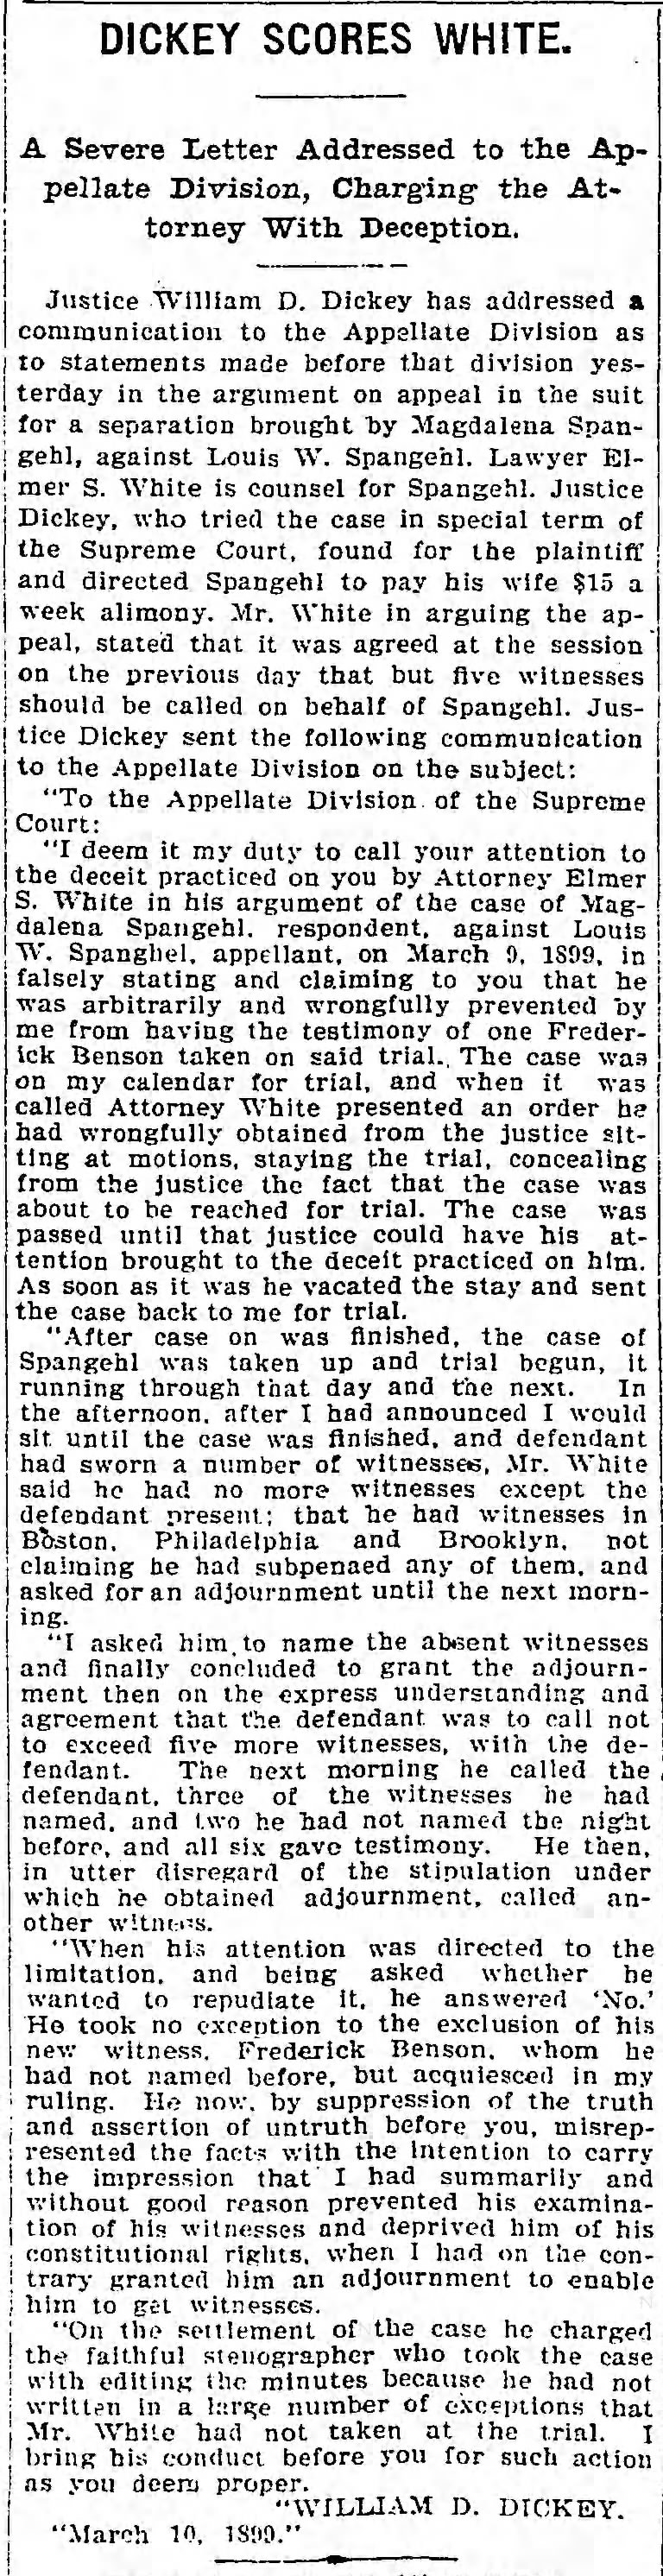 10 March 1899 - Louis Spangehl divorce